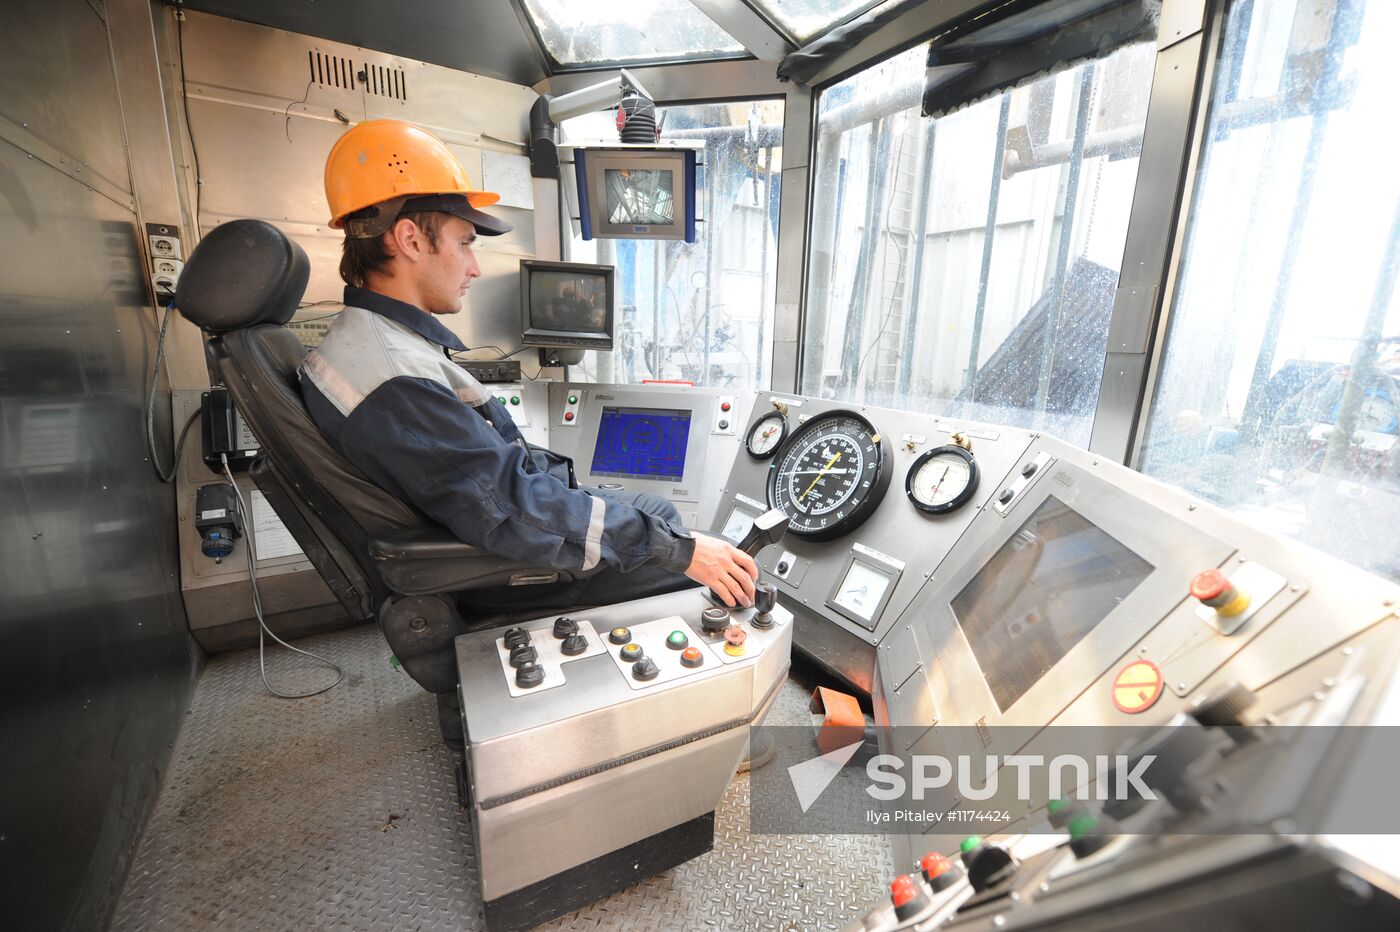 Oil production in Khanty-Mansi Autonomous District